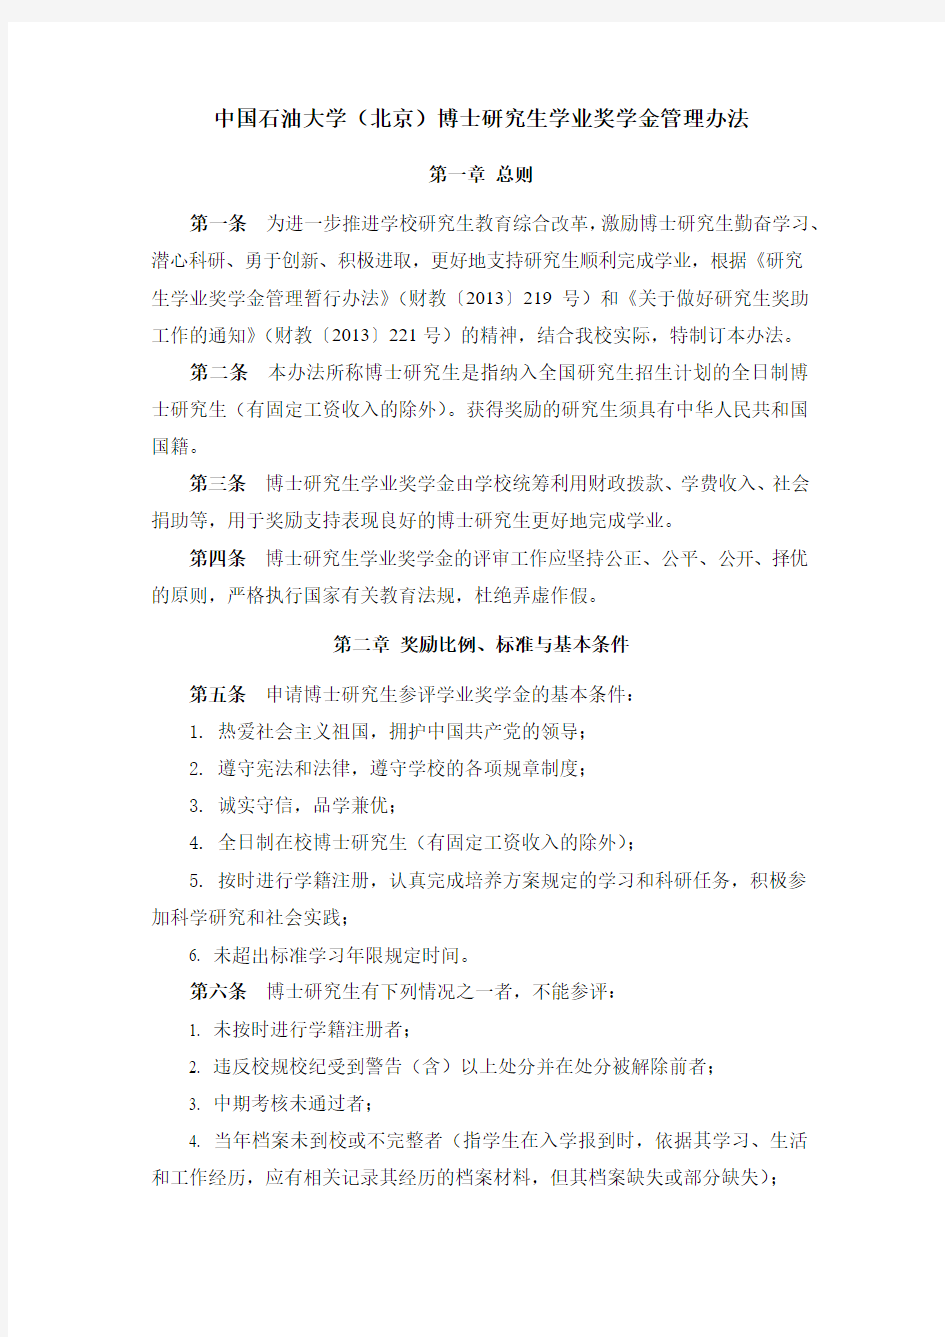 中国石油大学(北京)博士研究生学业奖学金管理办法 (1)